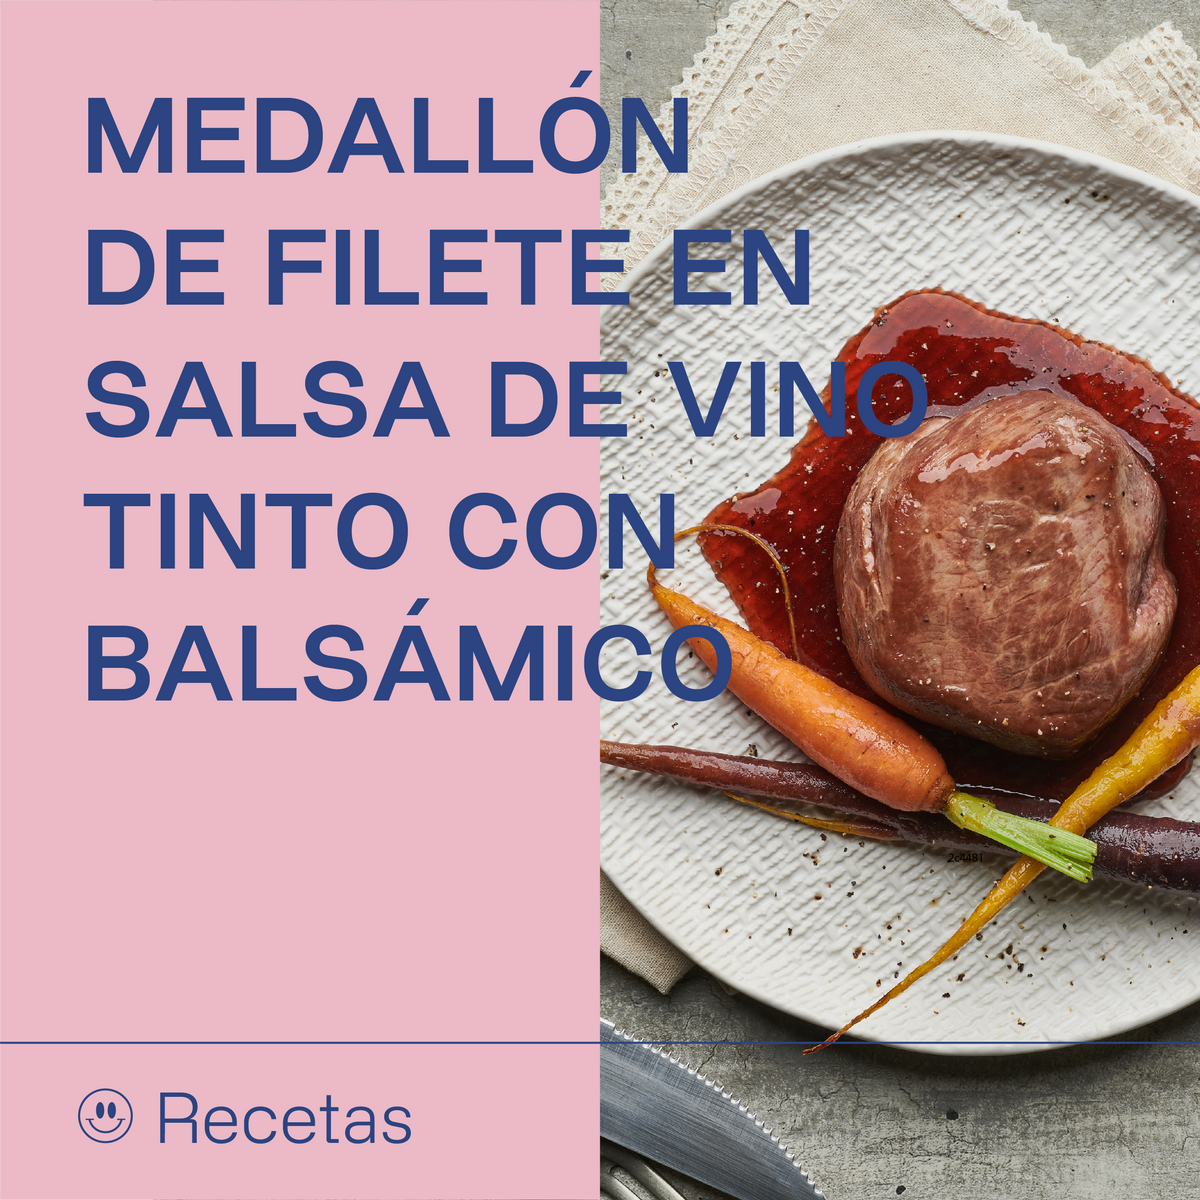 Medallón de filete en salsa de vino tinto con balsámico | Alacena de Mónica